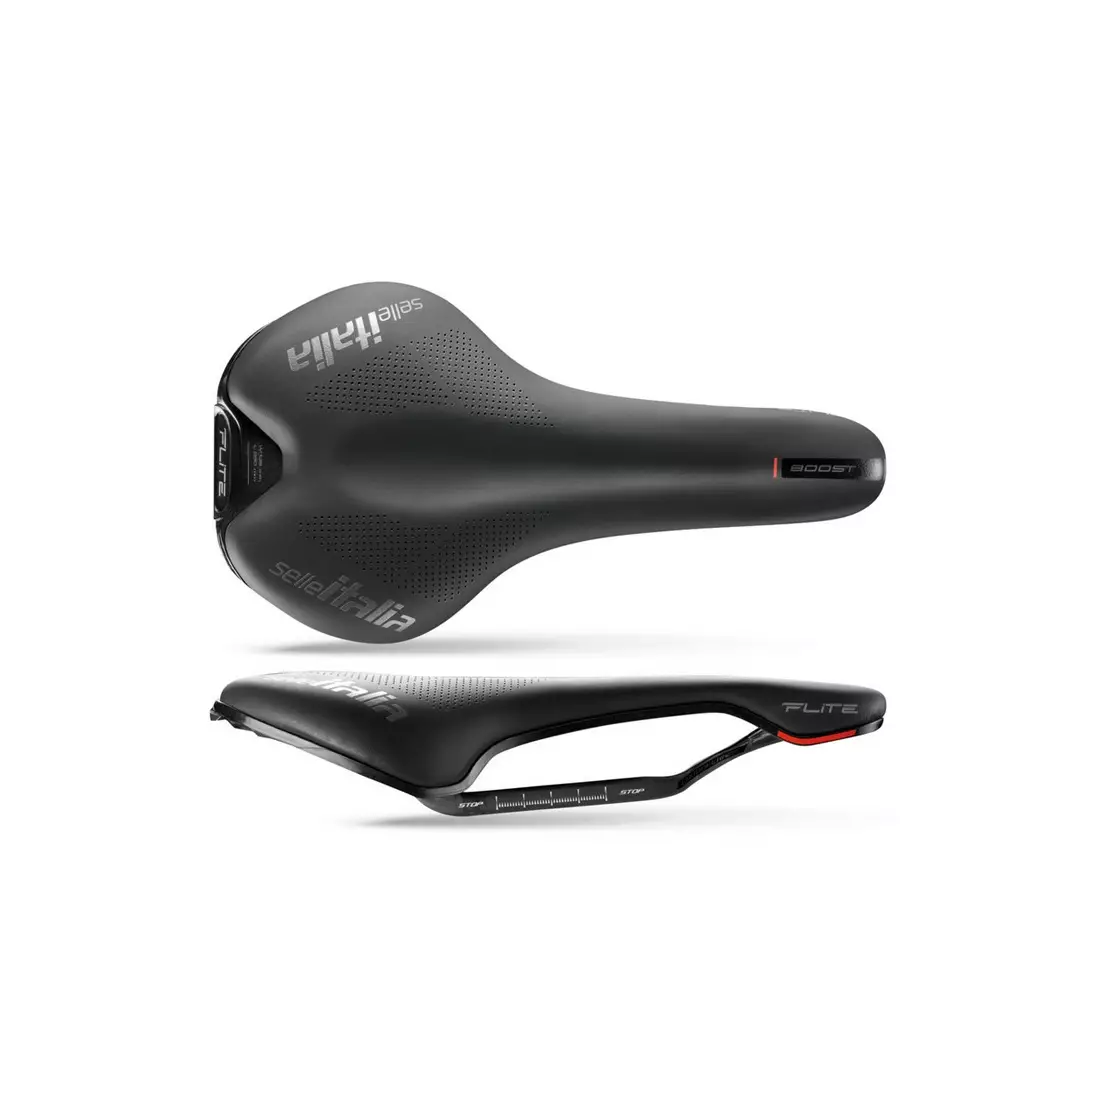 SELLE ITALIA kerékpár ülés flite boost kit carbonio S (id match - S1) black